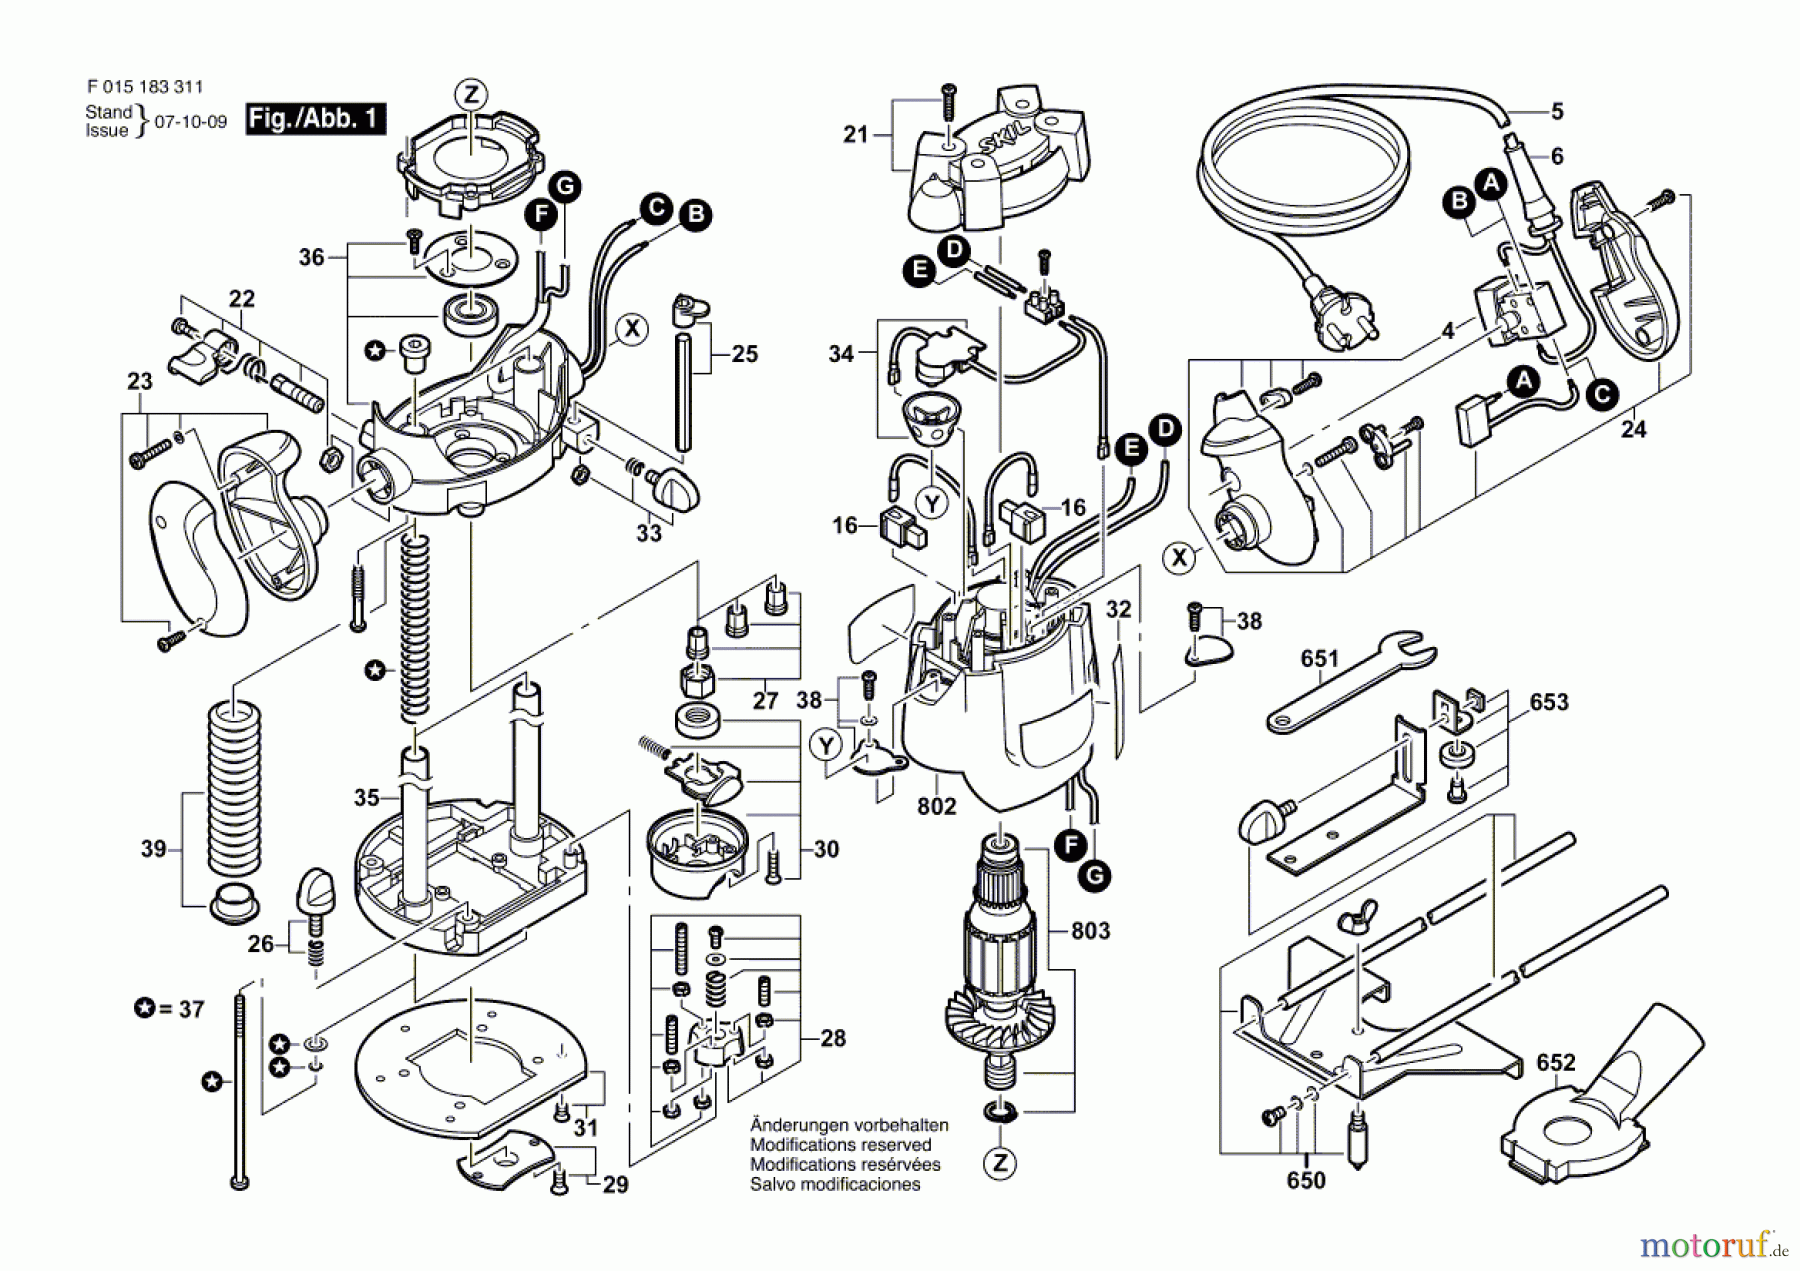  Bosch Werkzeug Hw-Oberfräse 1833 Seite 1